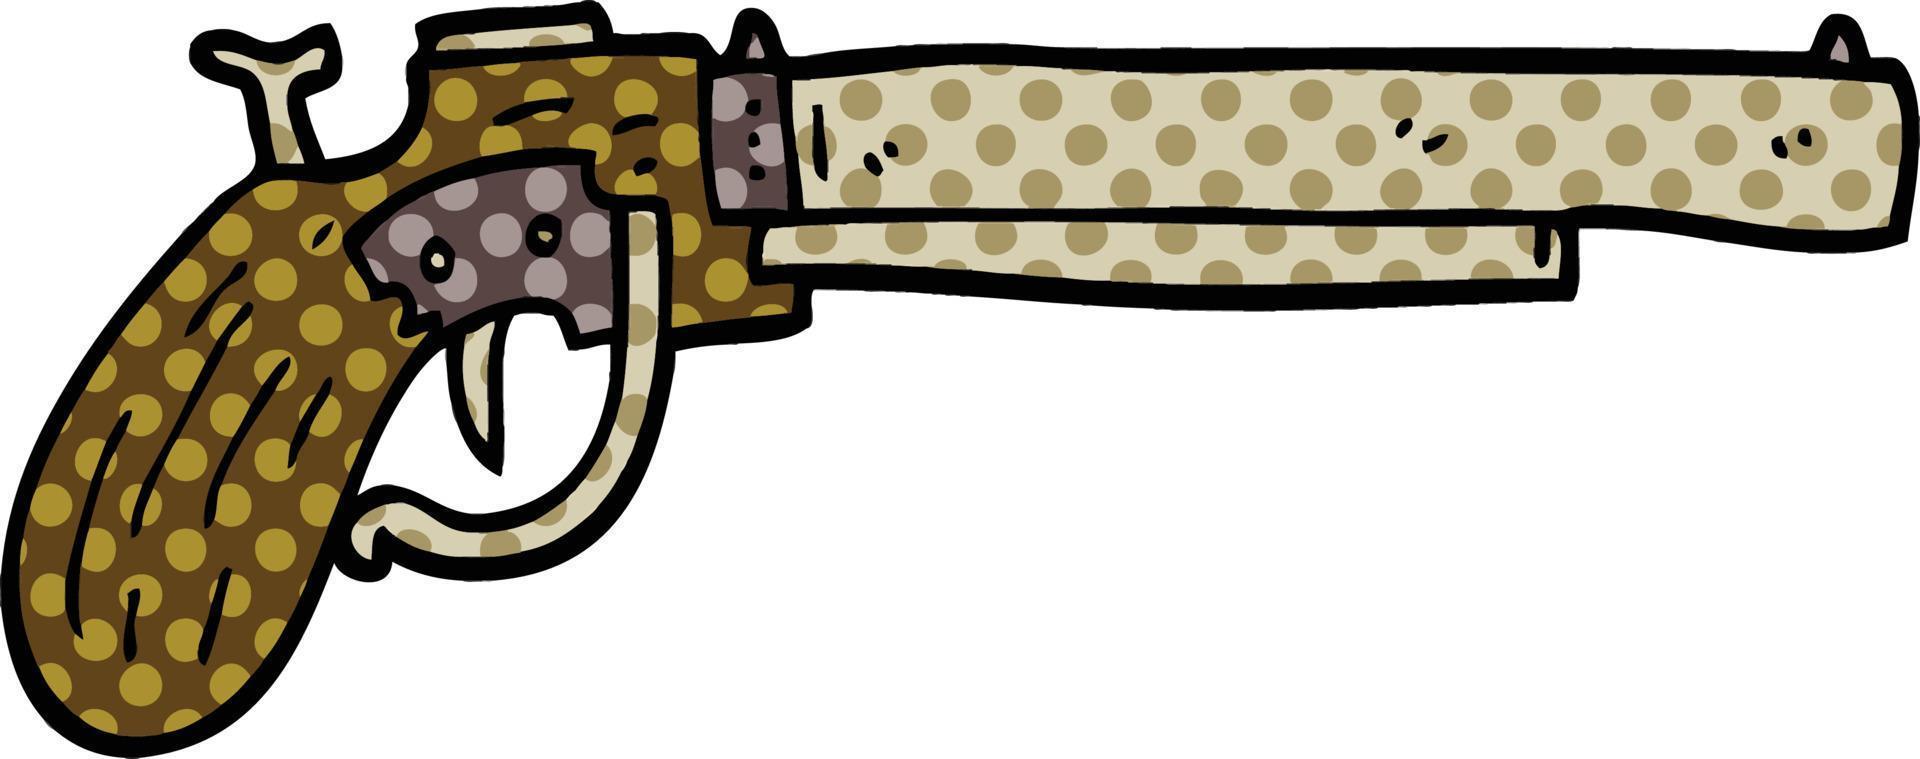 vieux pistolet de dessin animé de style bande dessinée vecteur